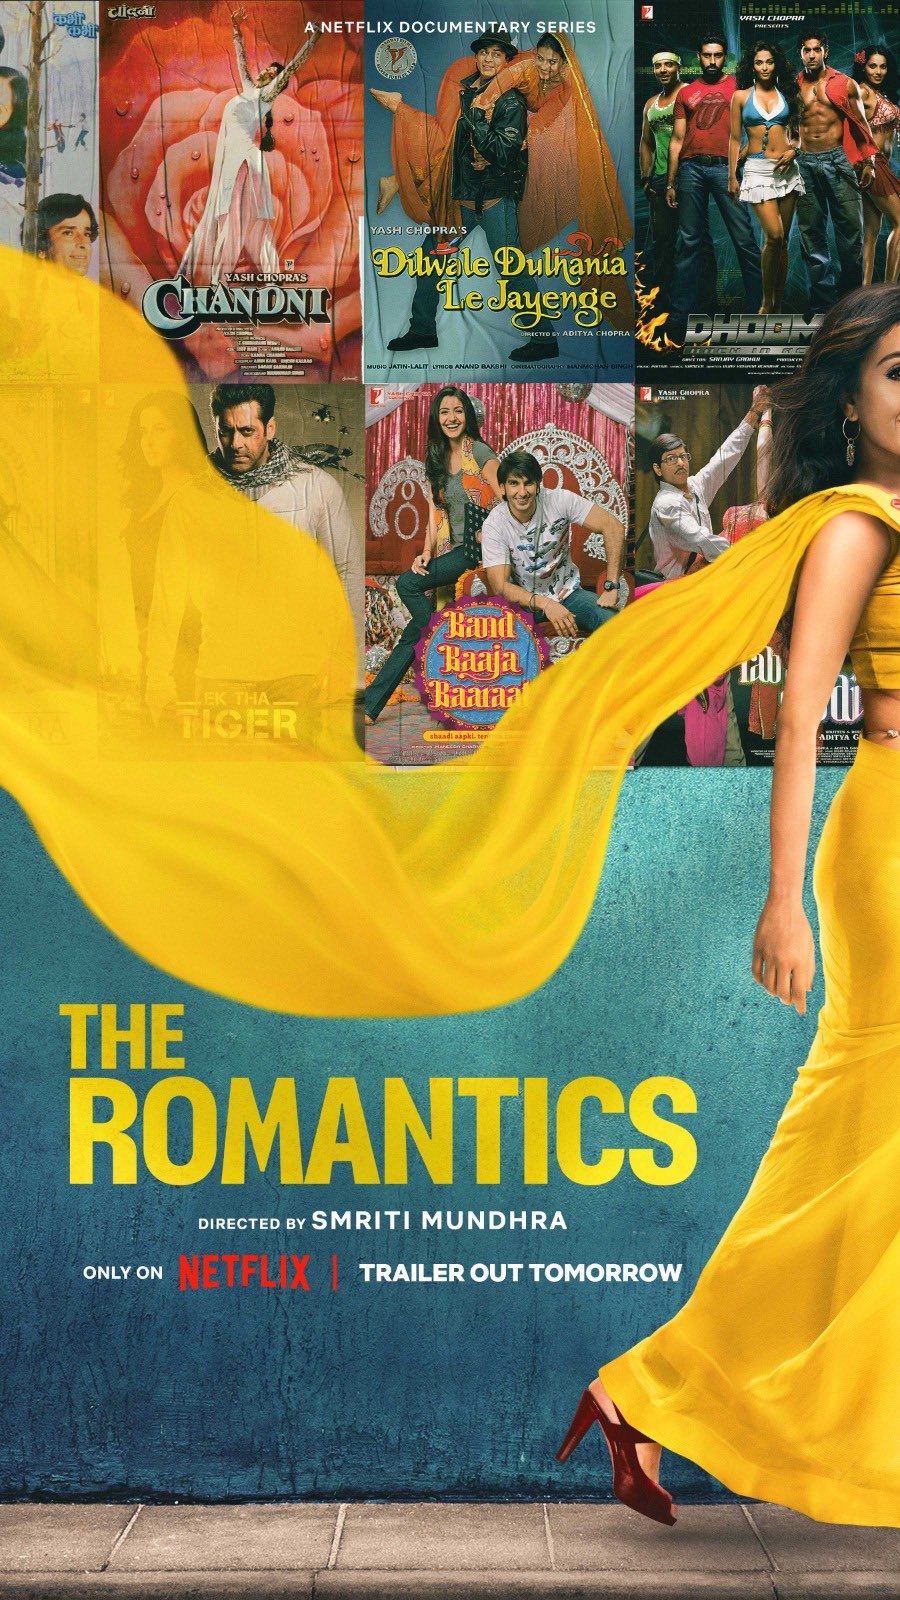 The Romantics về hai cha con nhà Chopra hiện đang được chiếu trên Netflix